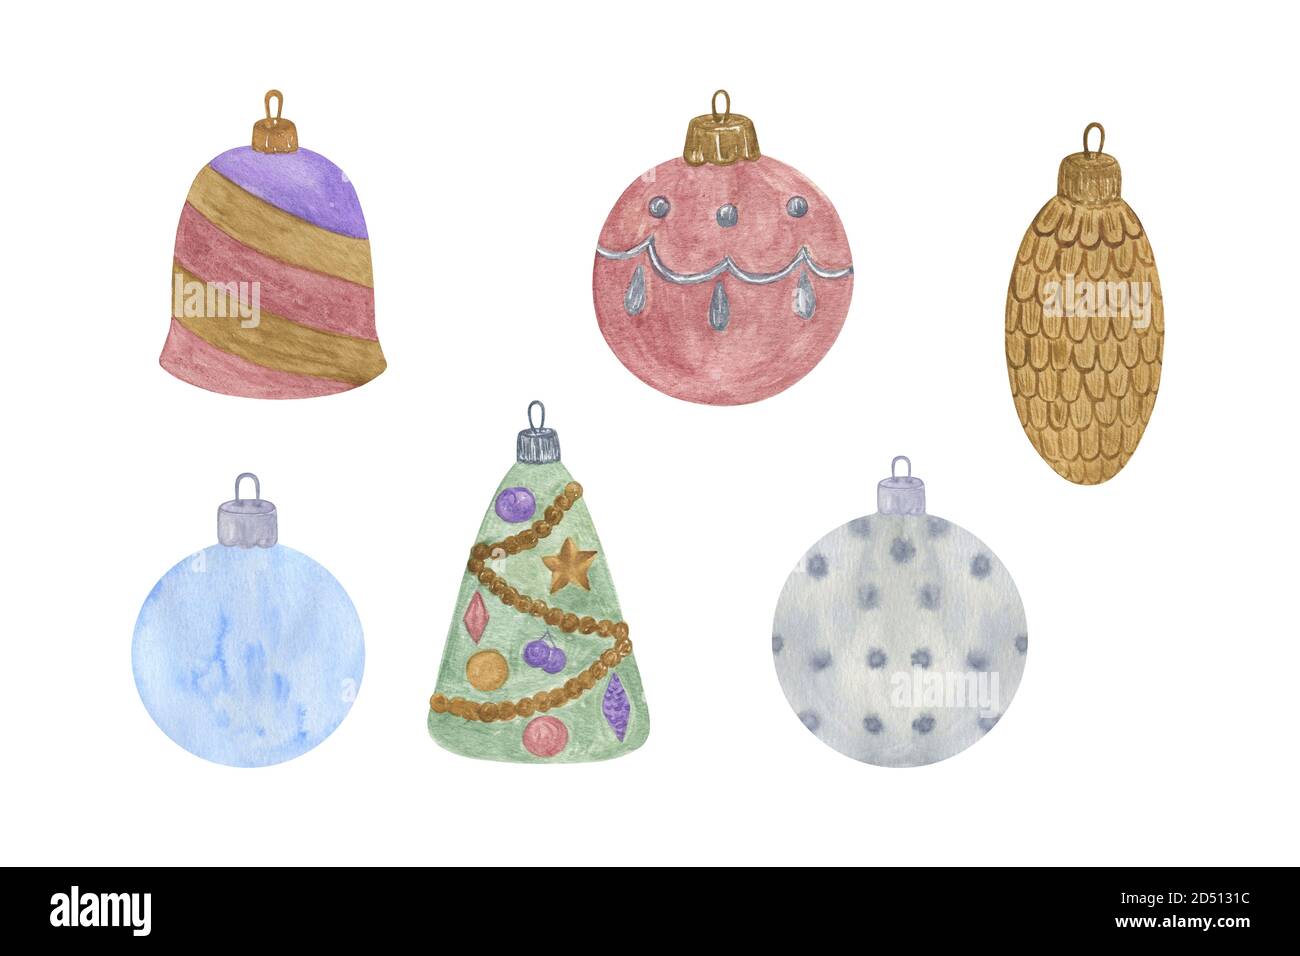 Décoration arbre de Noël ensemble d'aquarelle dessinée à la main illustration sur fond blanc motif d'ambiance festive pour carte de voeux, bannière, motif fête d'hiver Banque D'Images